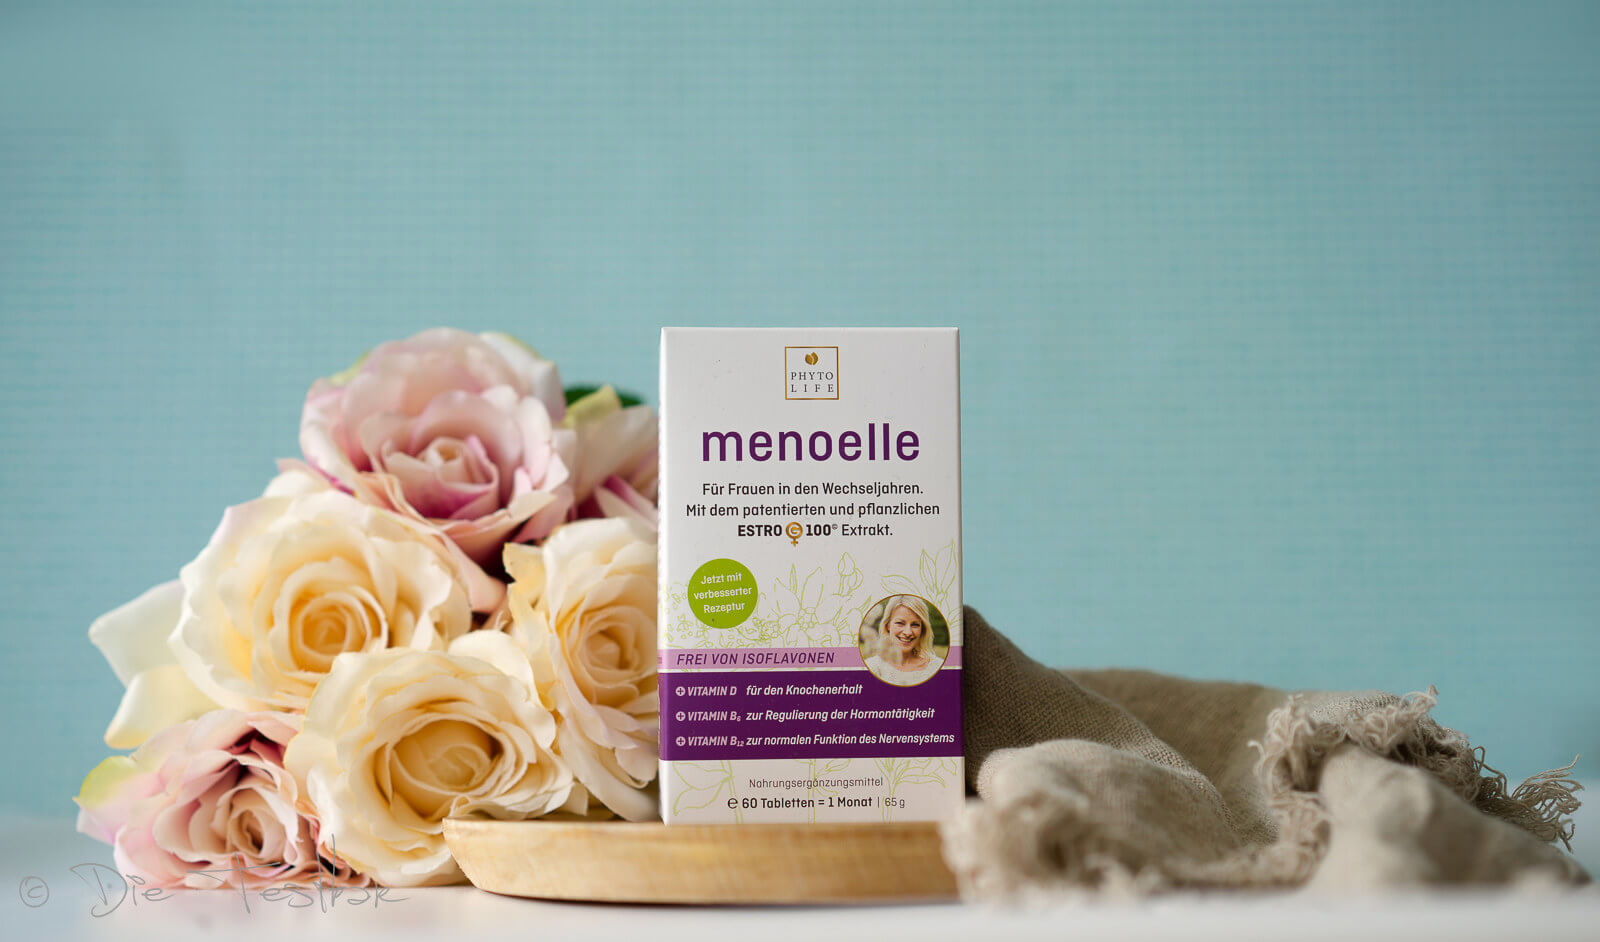 menoelle – die pflanzliche und hormonfreie Behandlungsoption in den Wechseljahren für Haut, Haare und Wohlbefinden  1